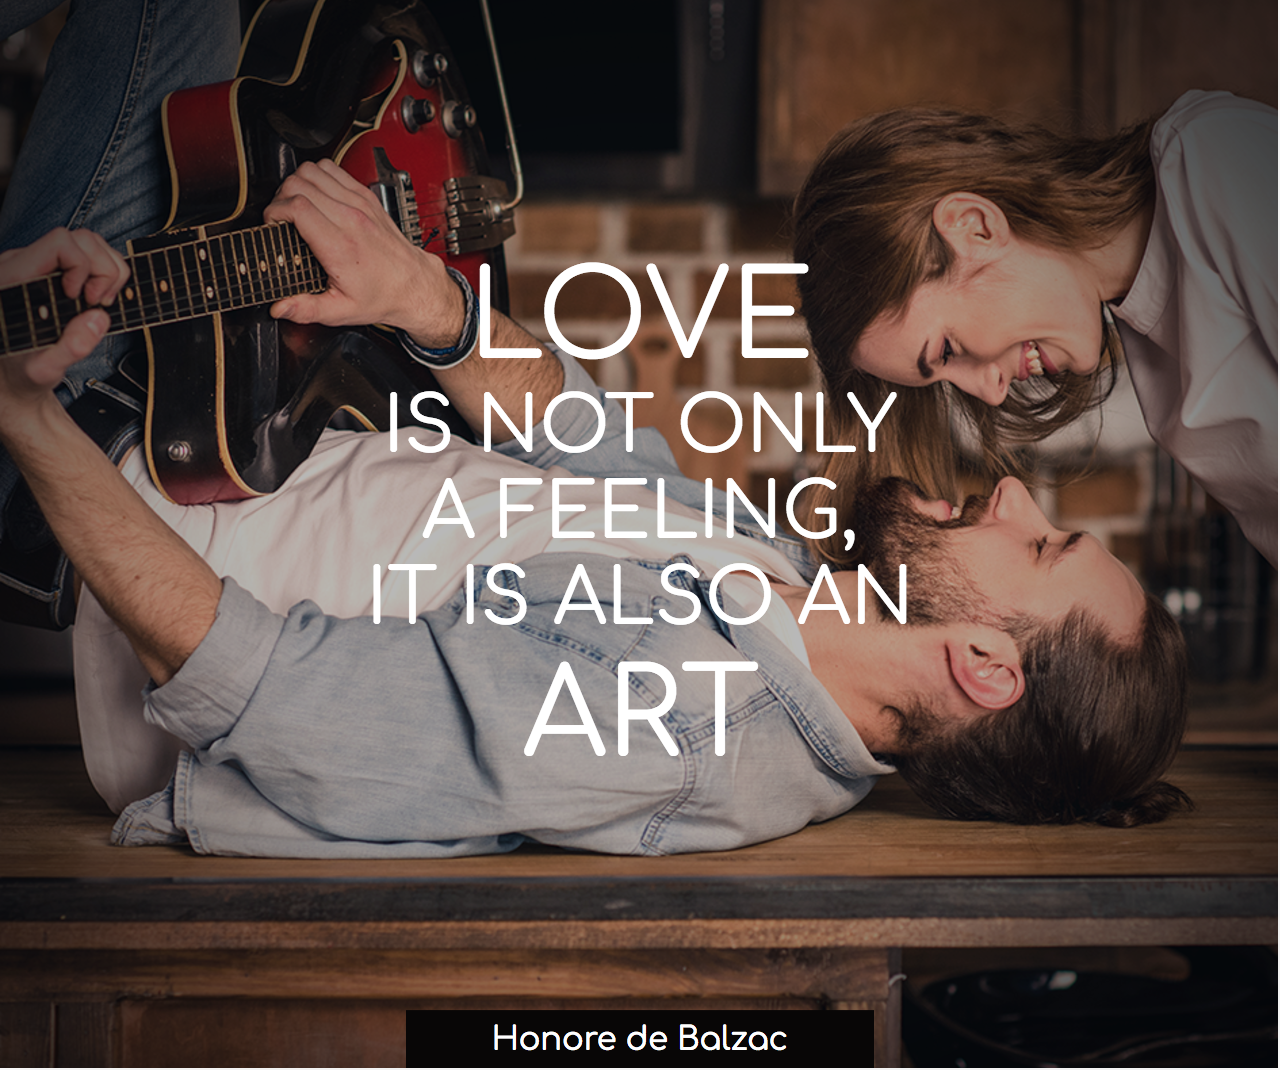 Love is not a feeling, it is an art